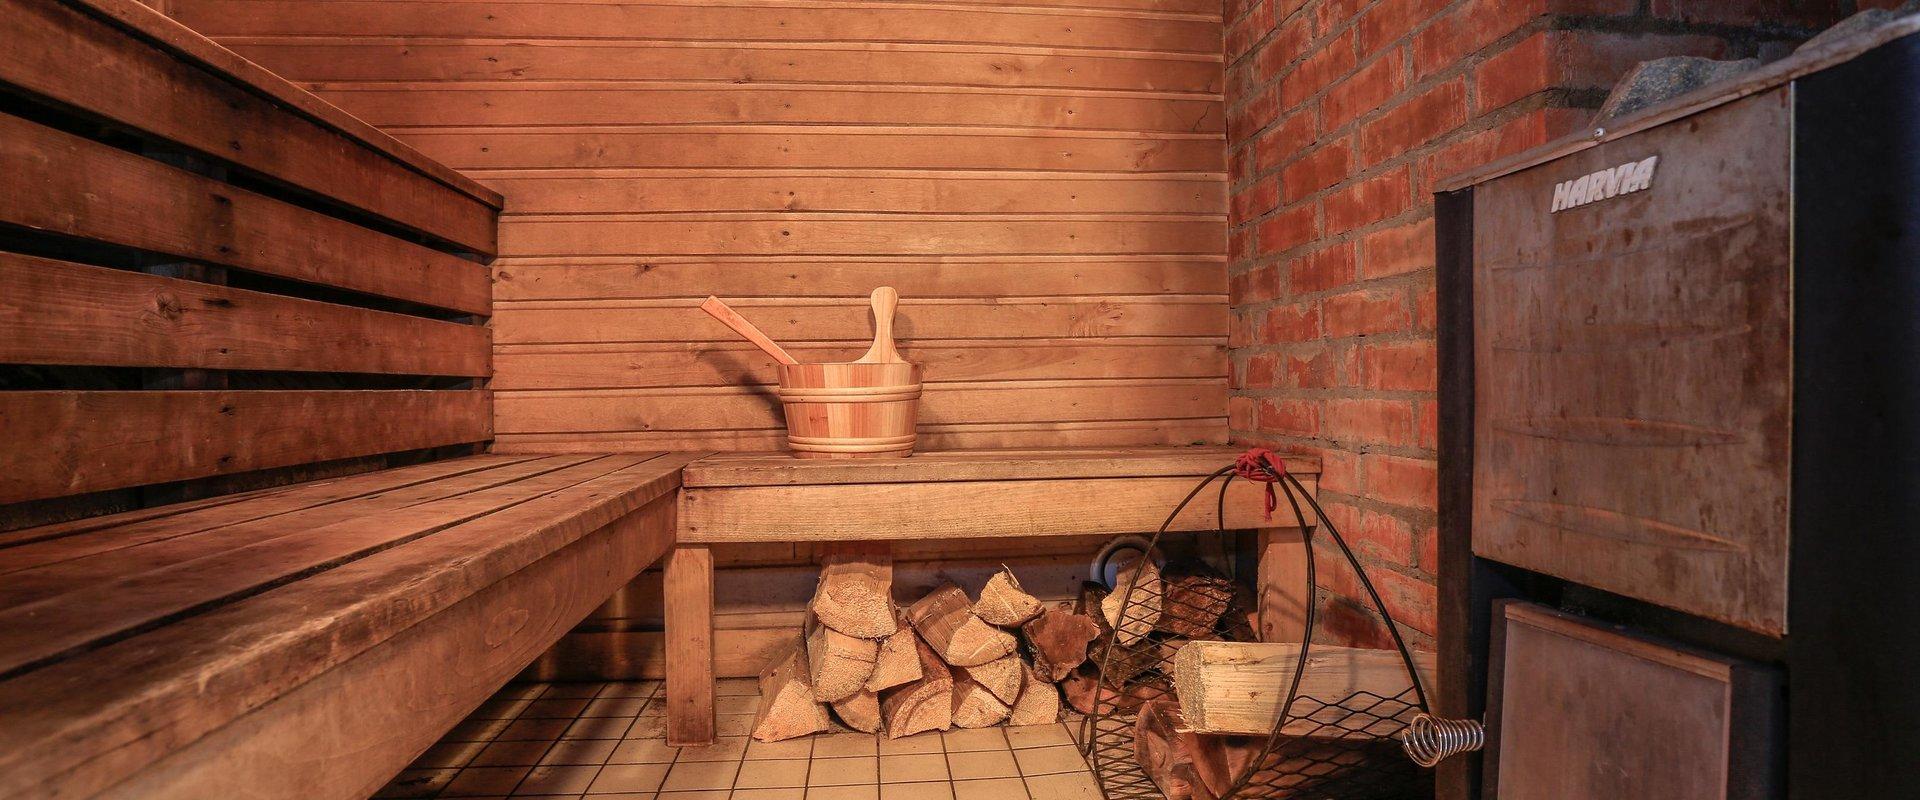 Farm sauna